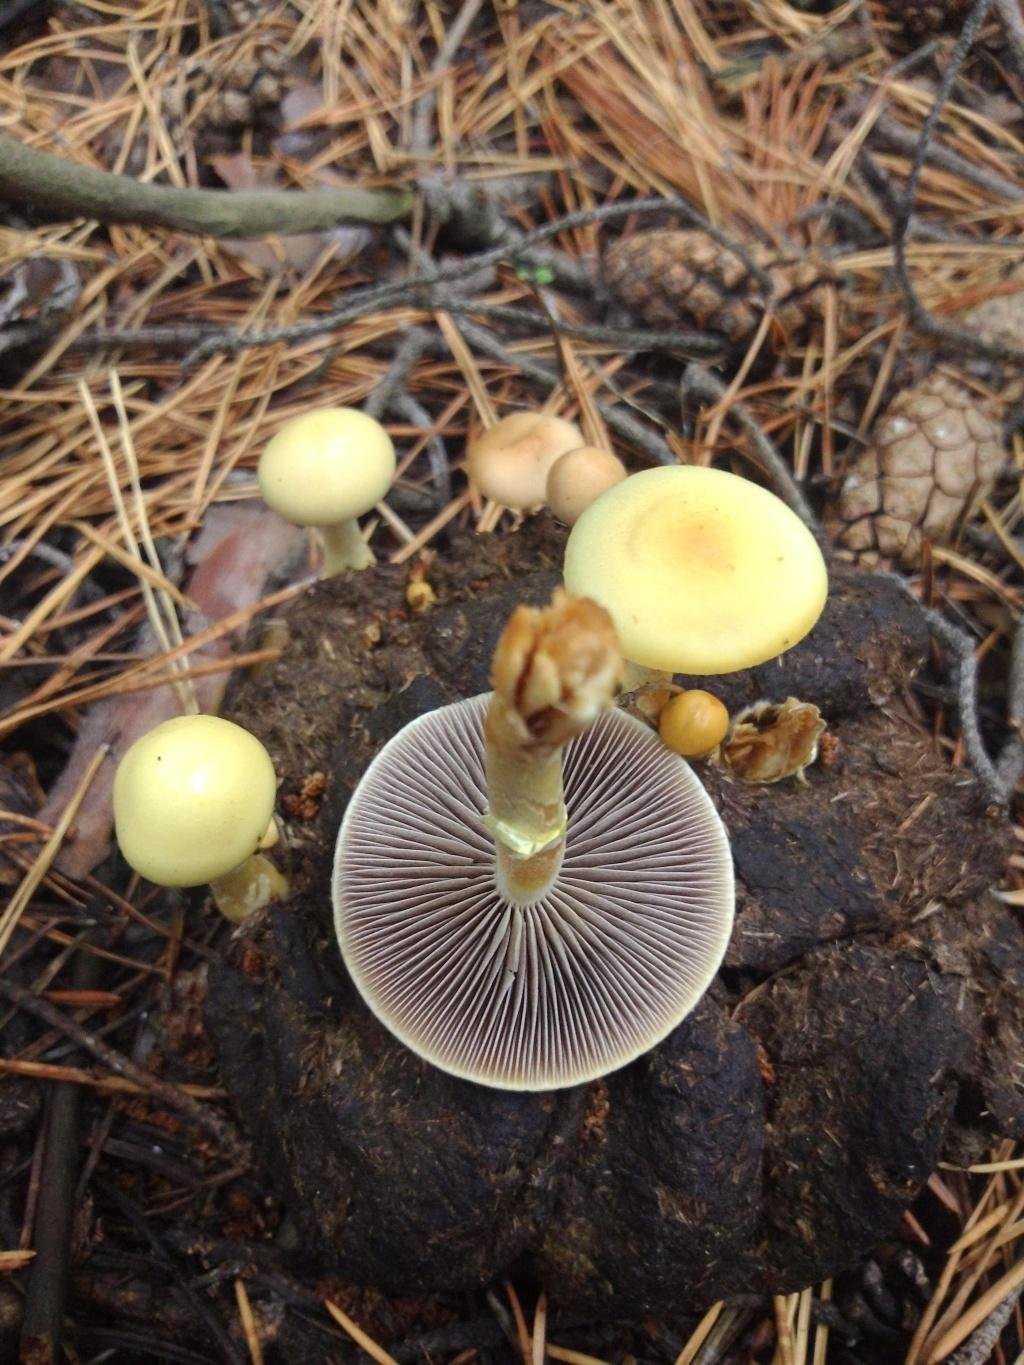 Гриб серушка, фото и описание. грибы путики: съедобные или ядовитые